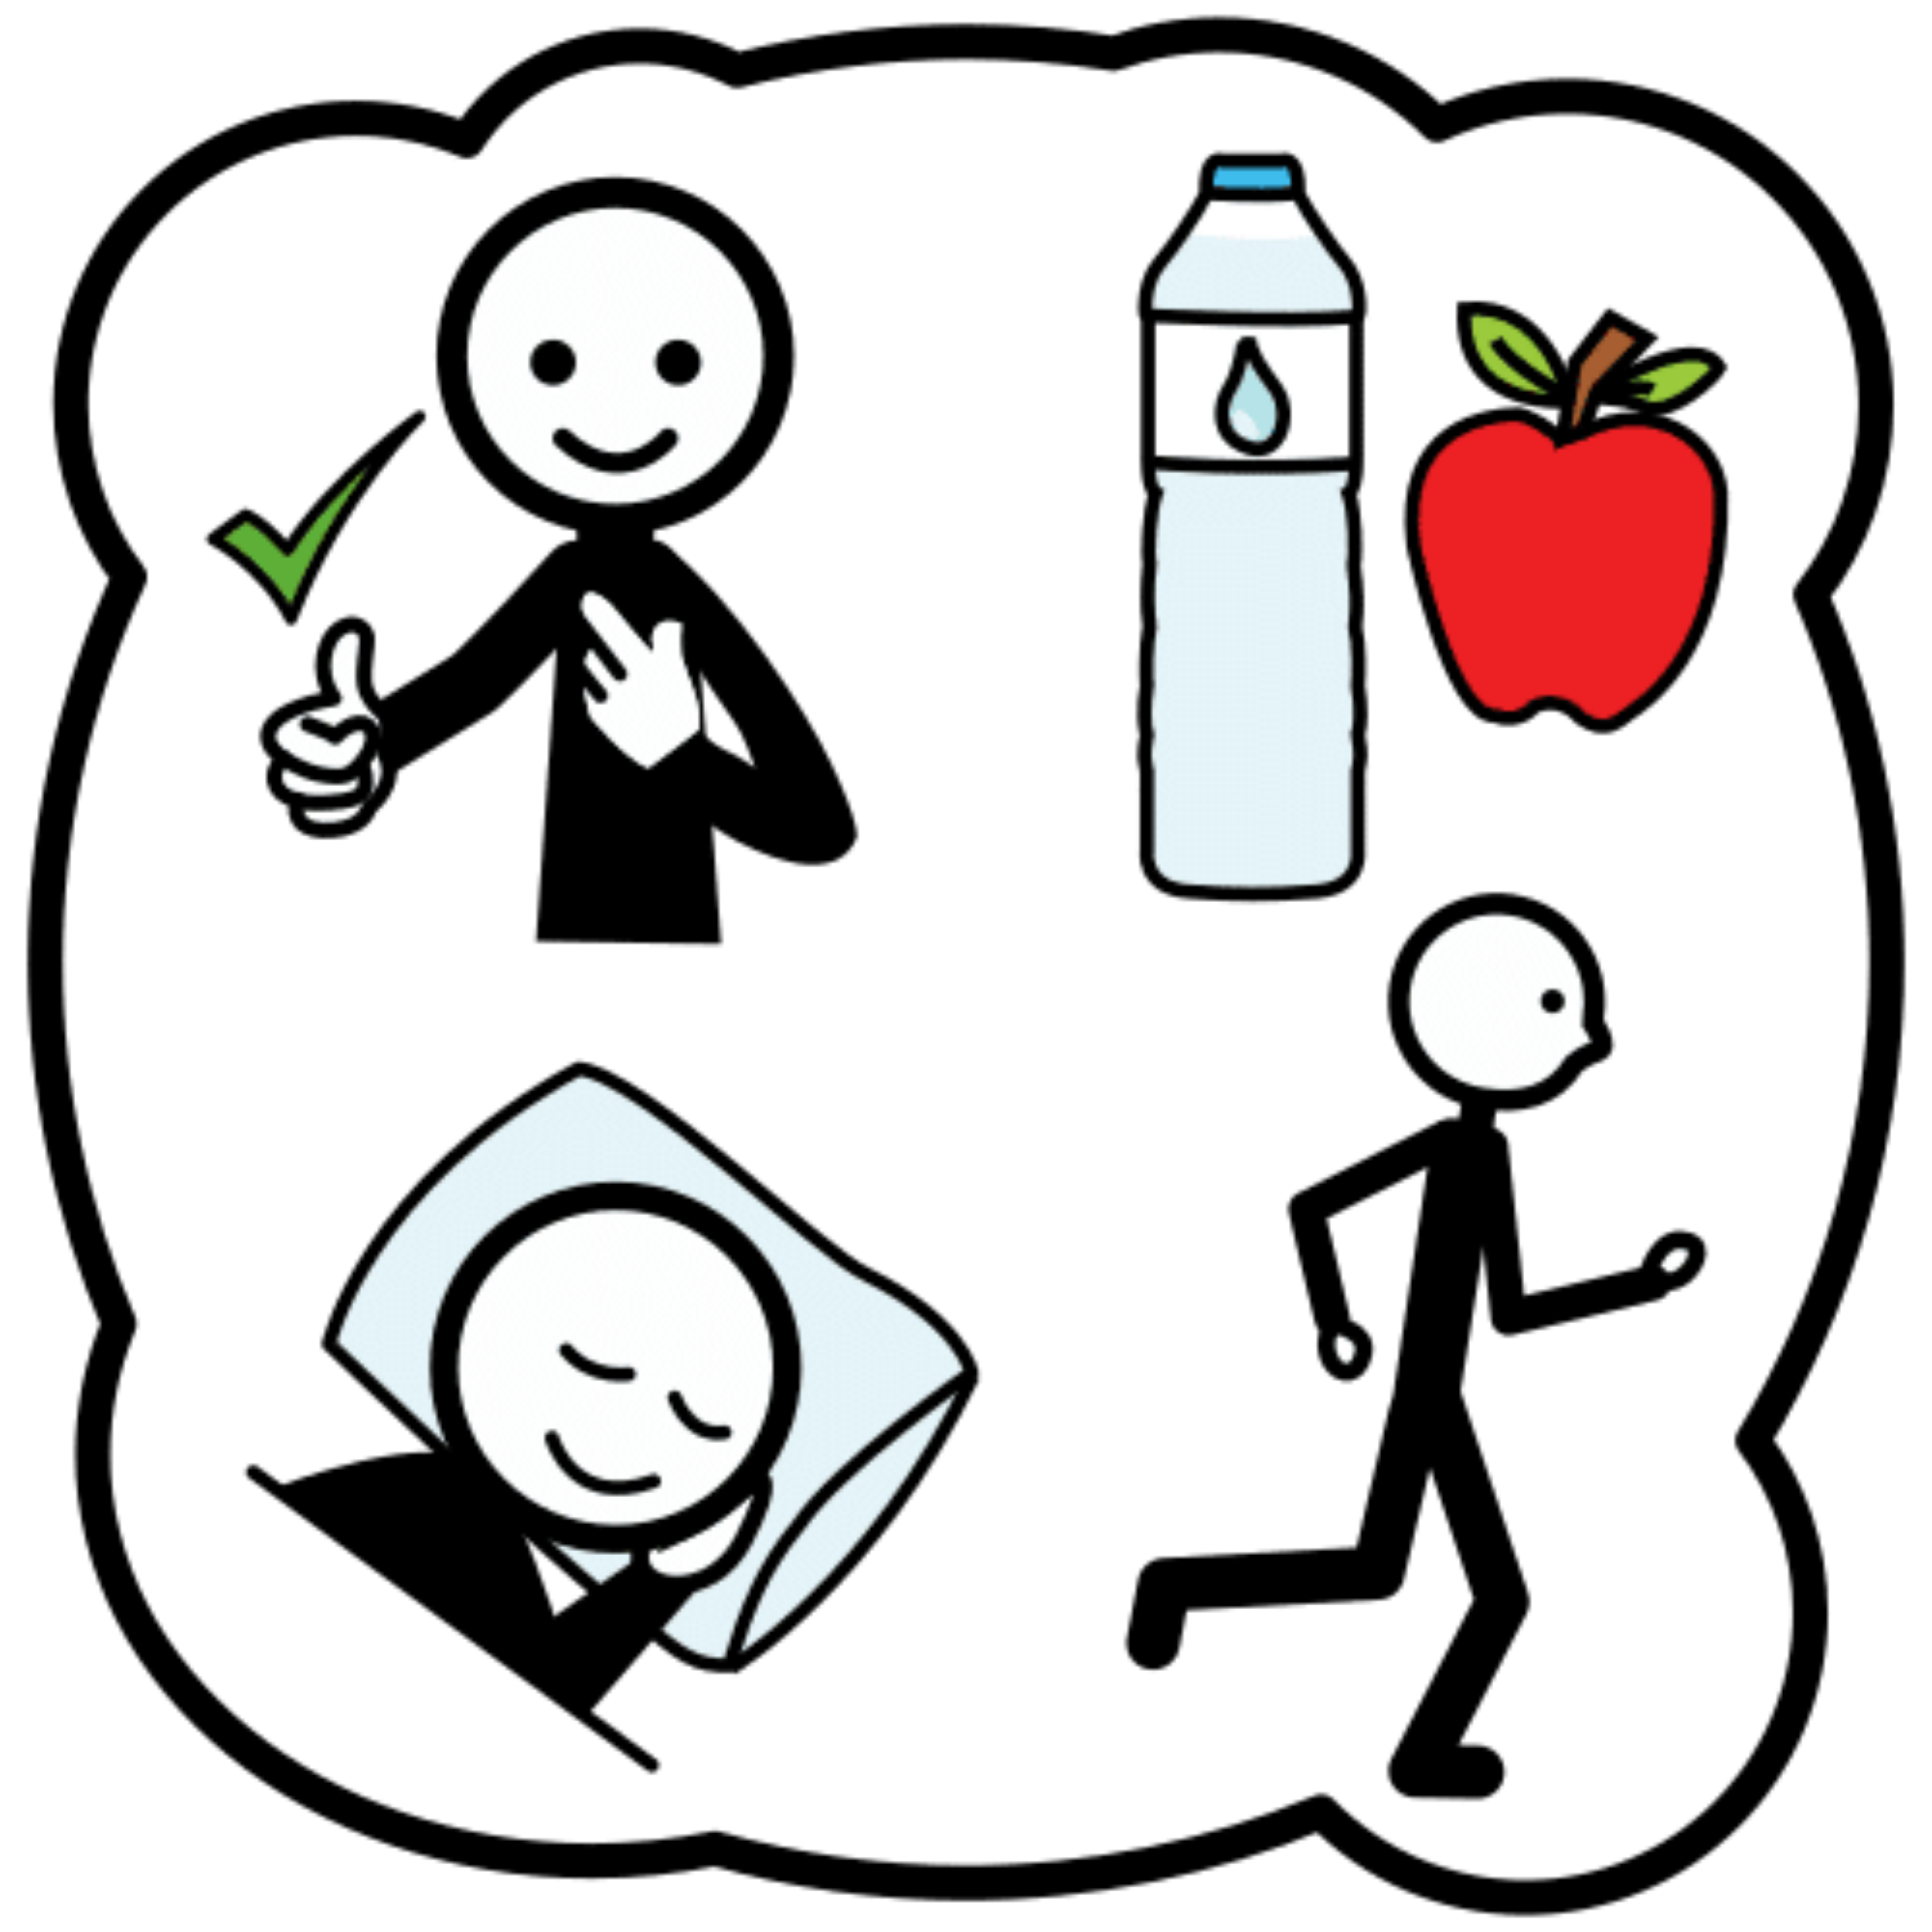 La imagen muestra a una persona durmiendo, corriendo, una botella de leche y una manzana